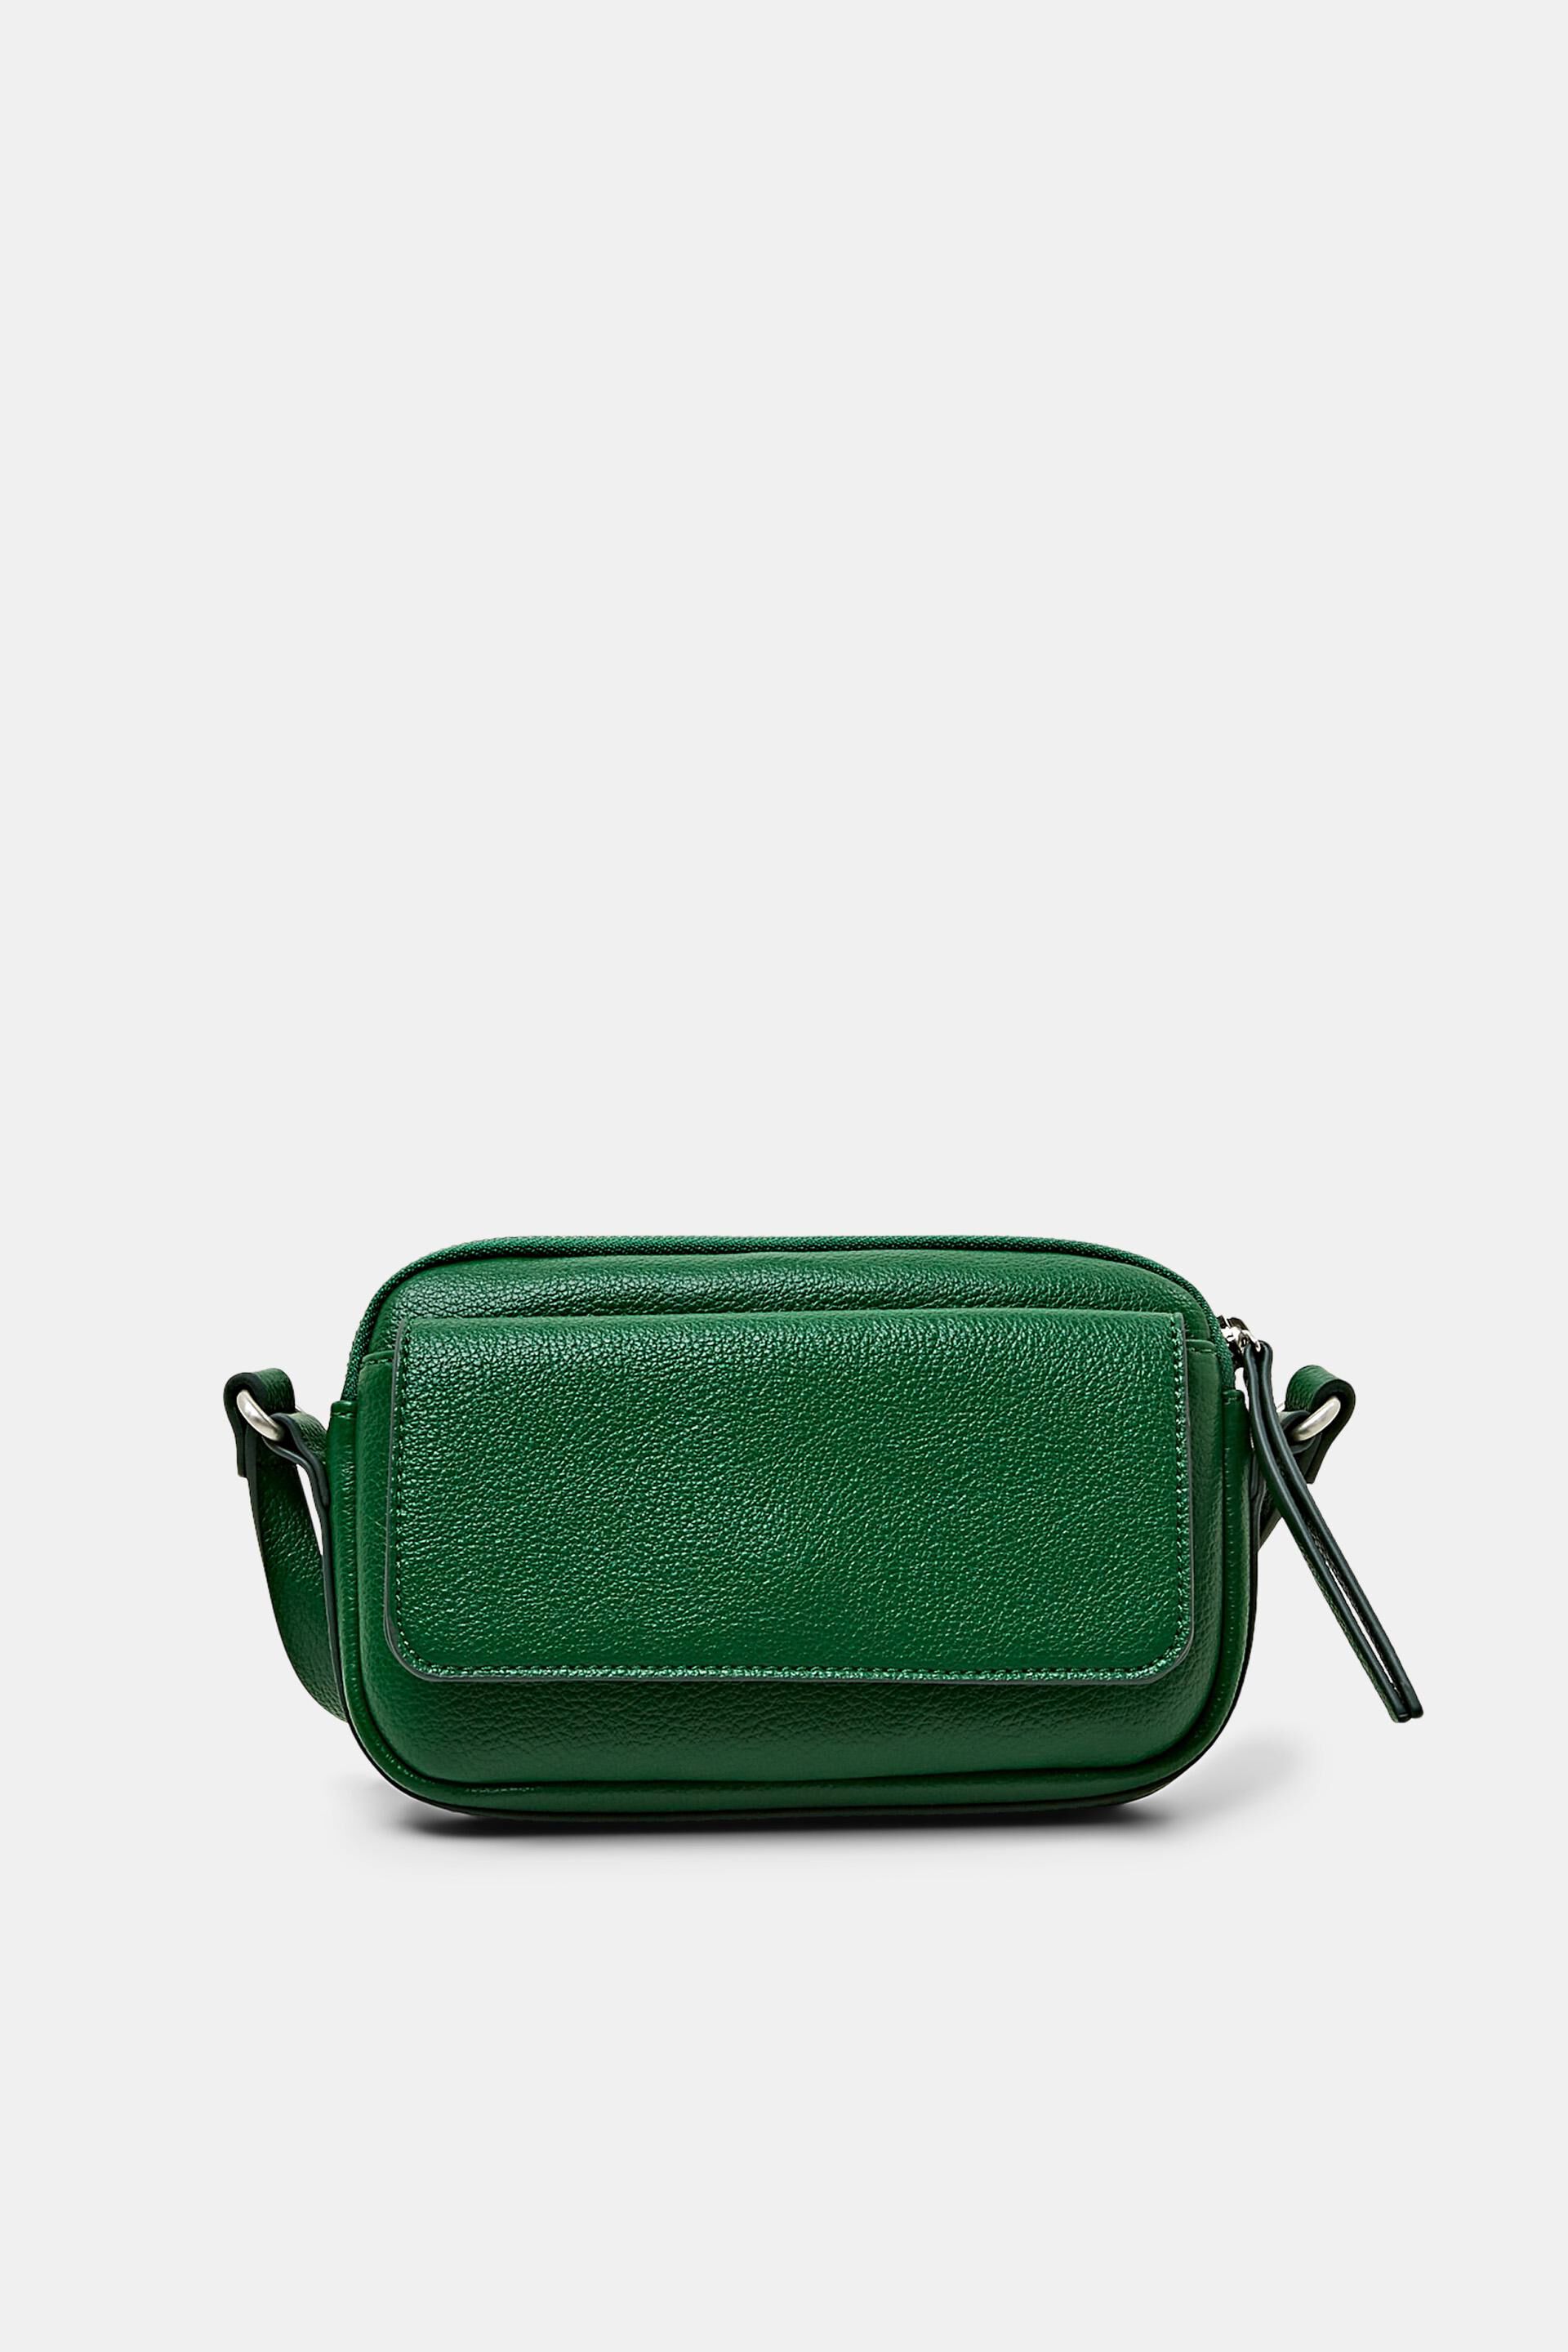 Buy Vintage GREEN OVERSIZE Shopper Bag Large Tote Shopping Bag Large  Everyday Purse Bag Tote Bag, DARK Green Leather Shoulder Bag Online in  India - Etsy